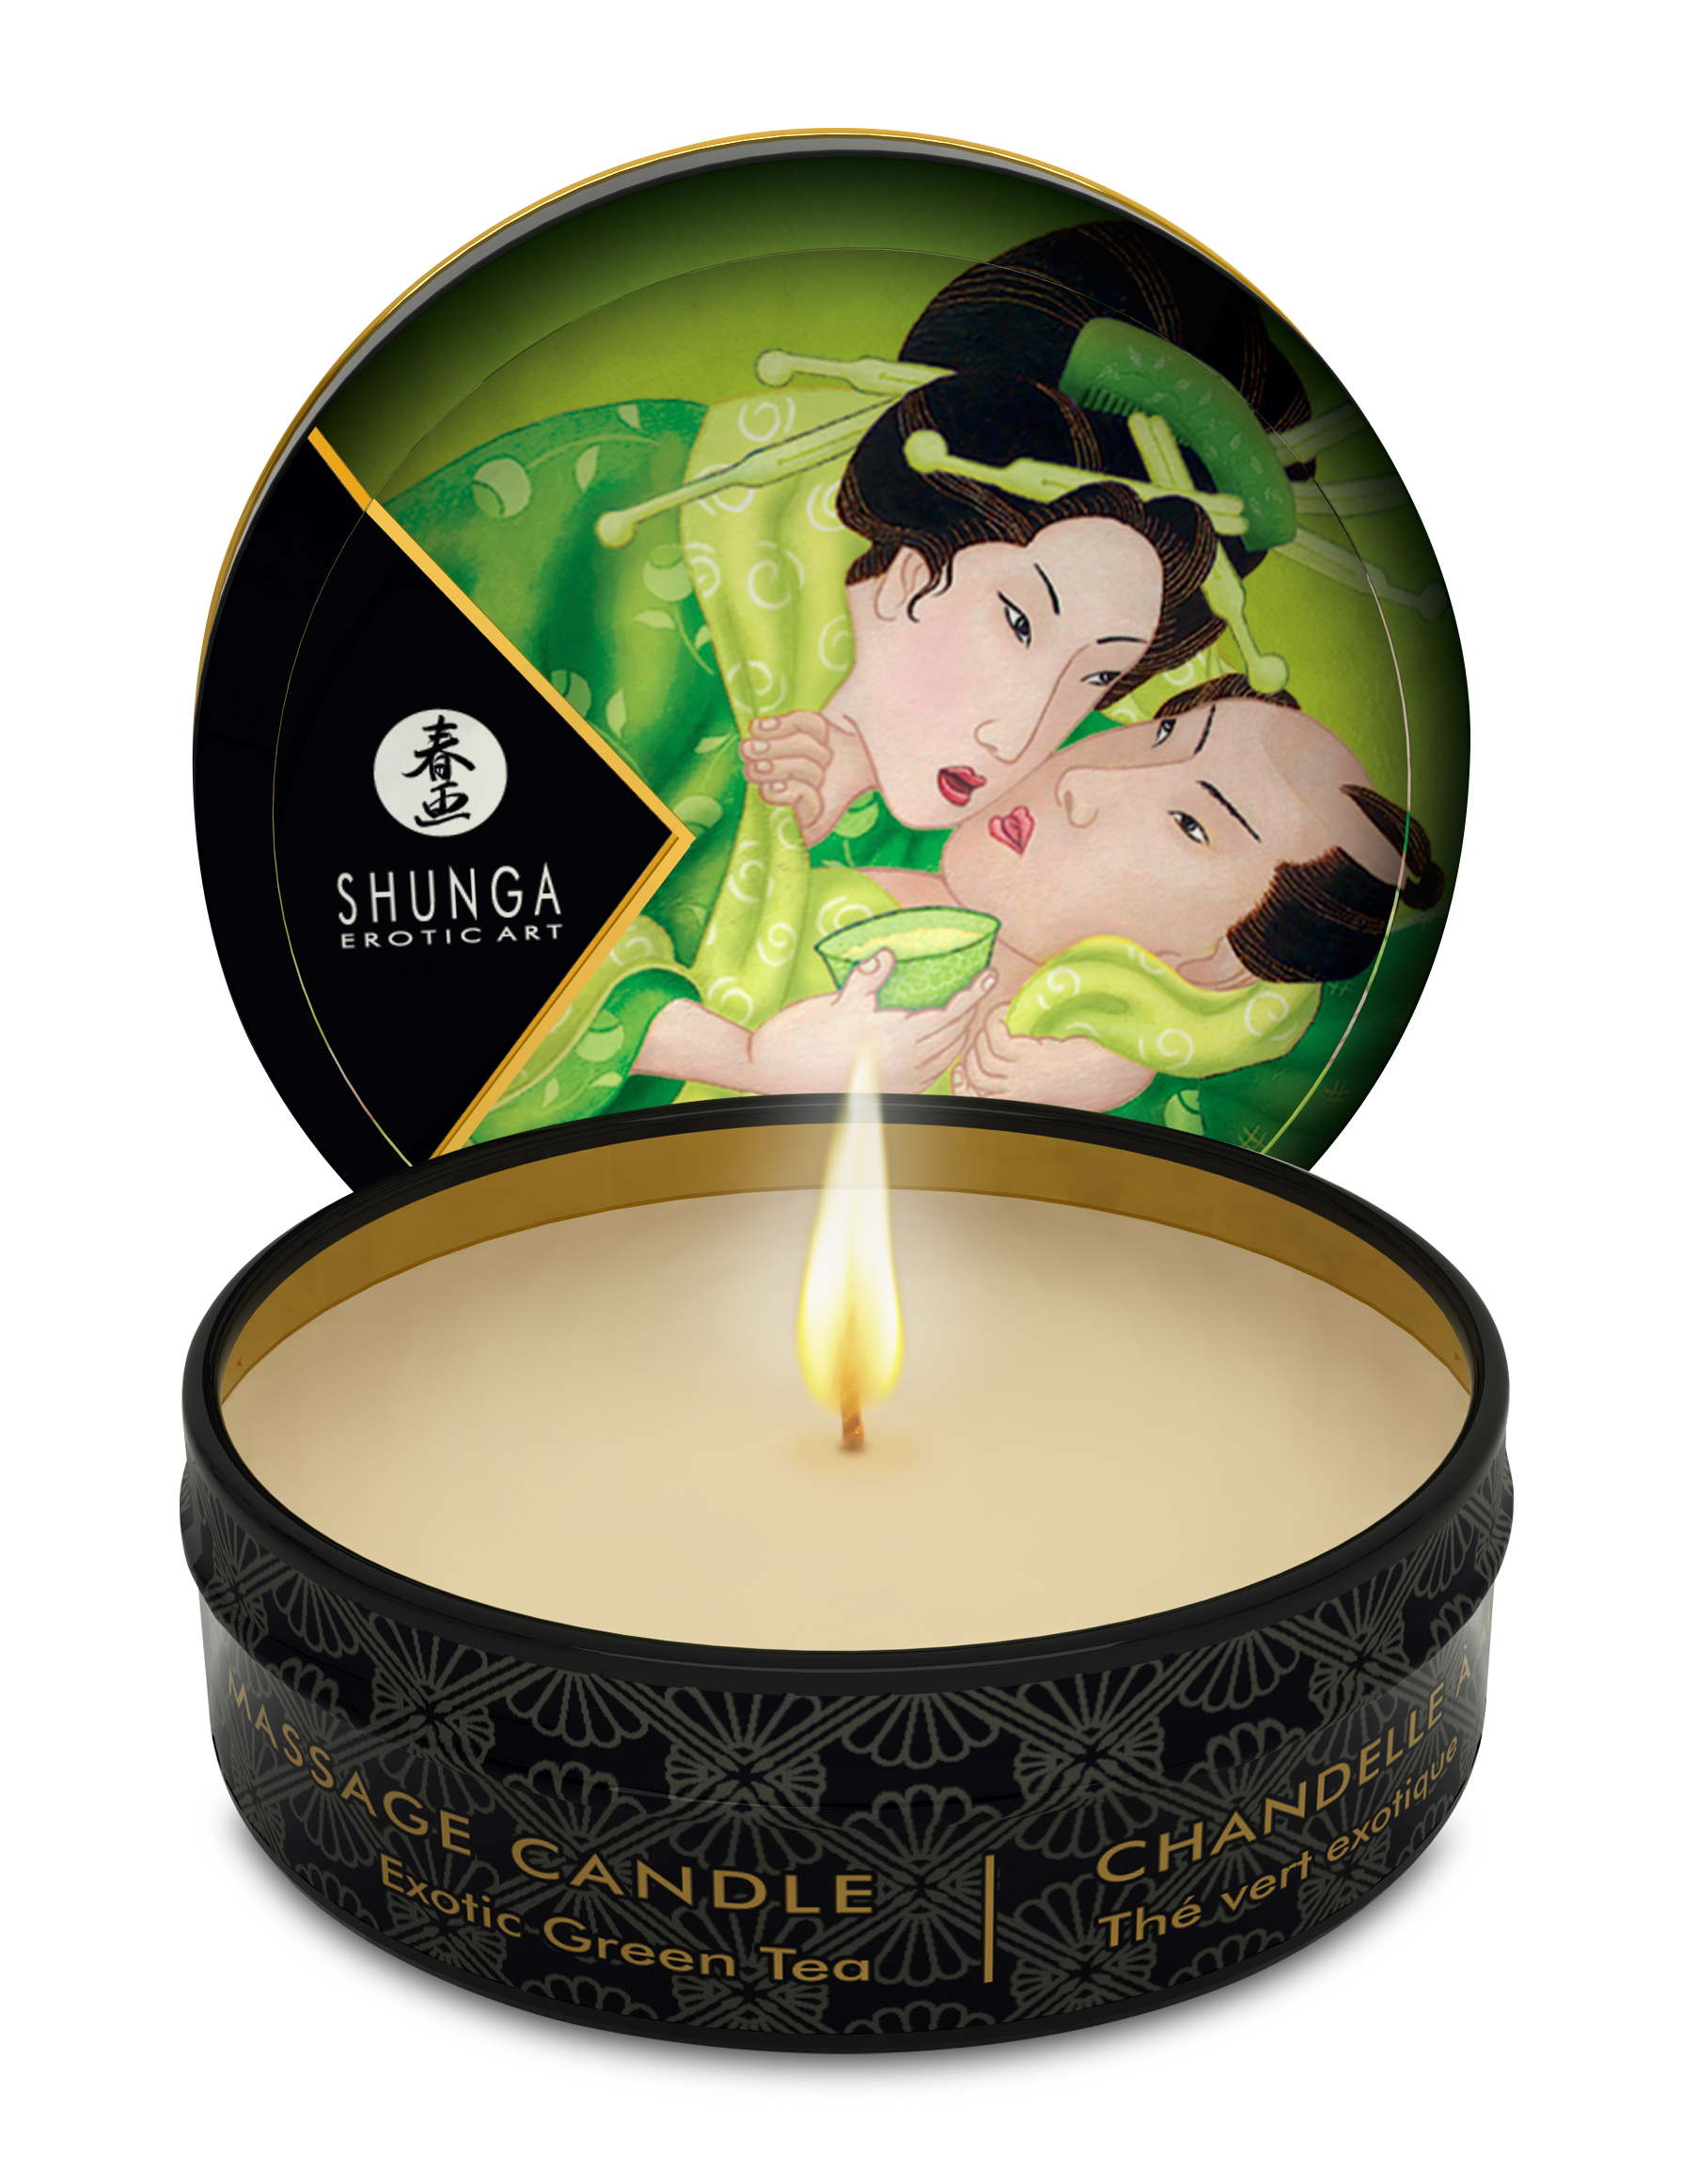 mini massage candle zenitude exotic green tea  fl oz 